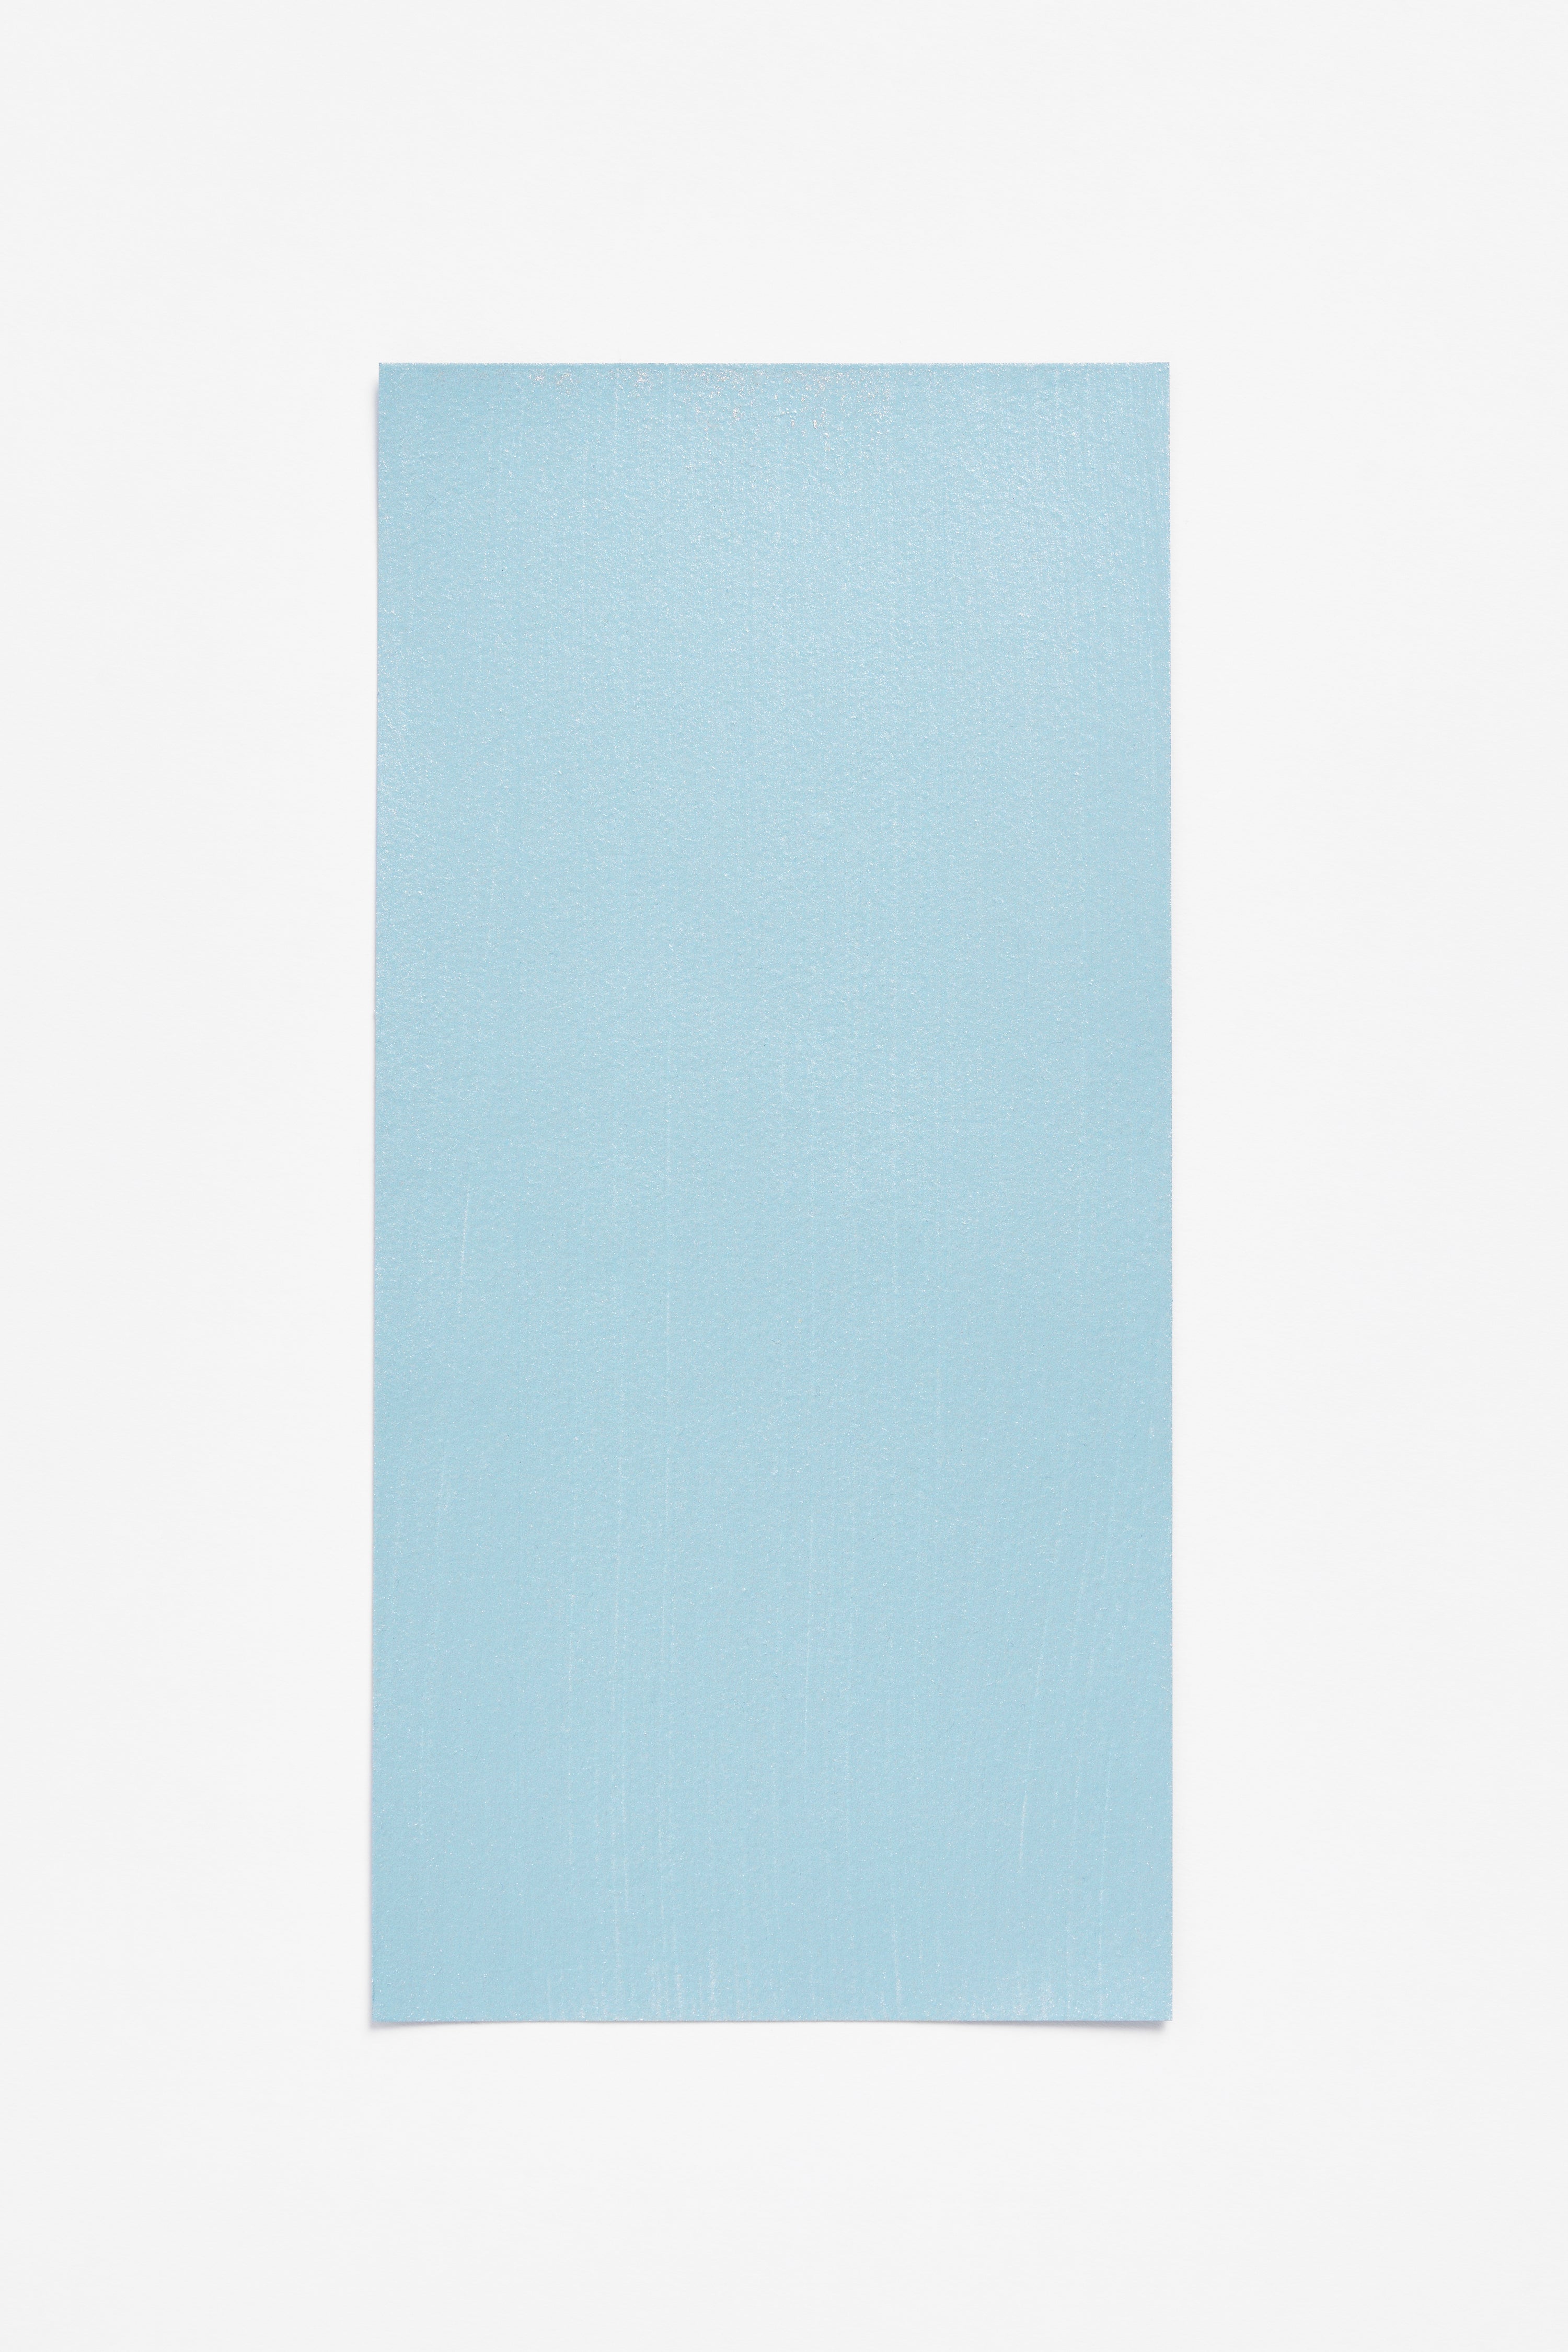 Bleu Métallique — a paint colour developed by Ronan Bouroullec for Blēo